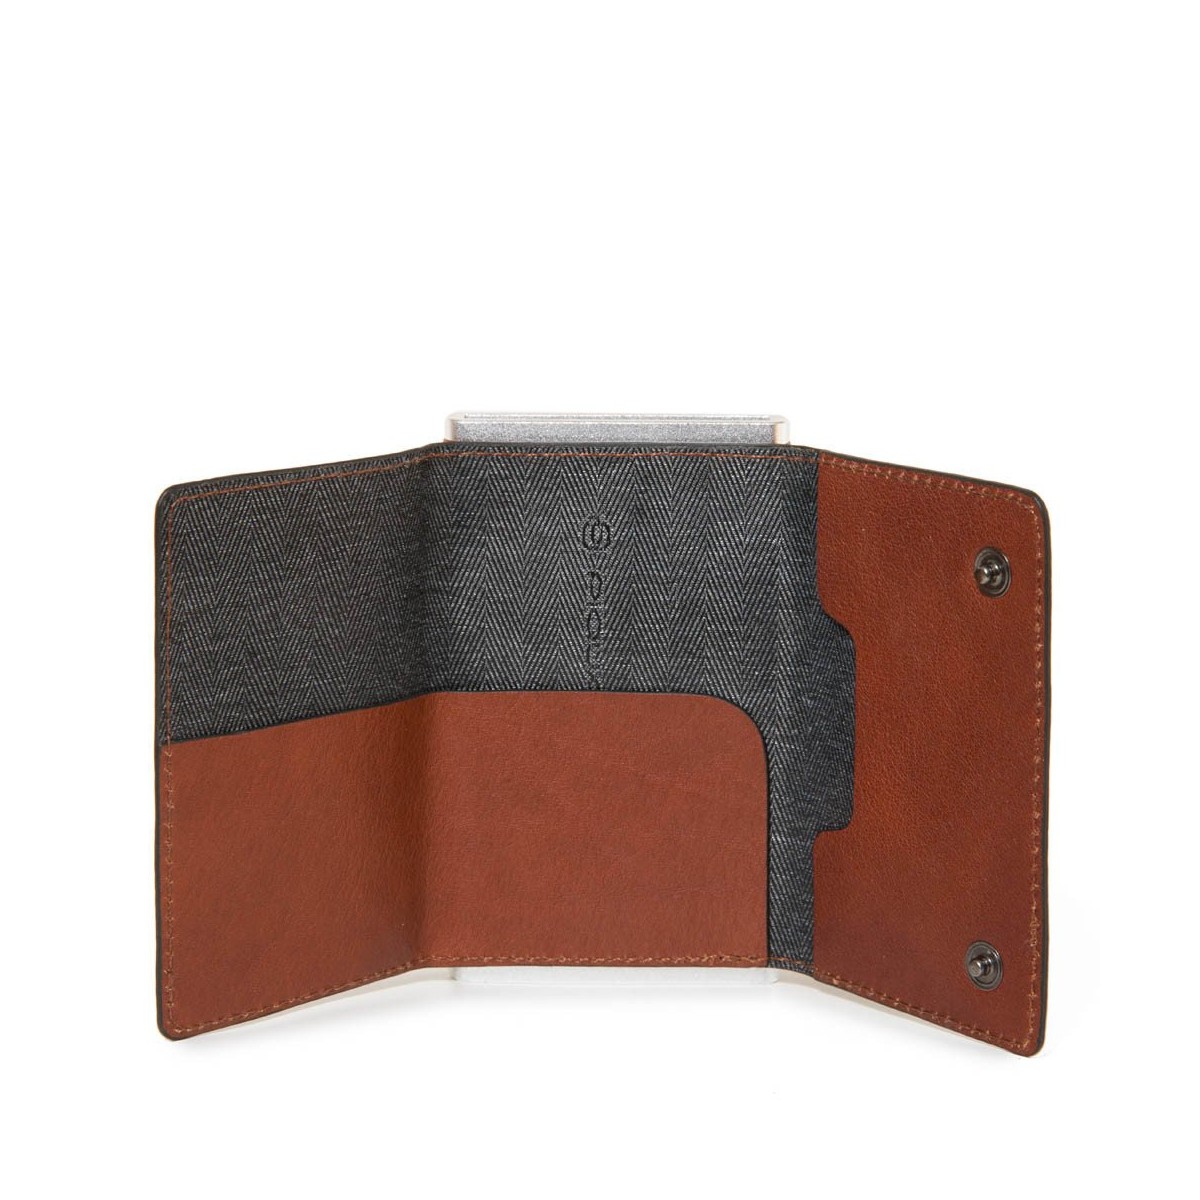 PIQUADRO Black Square portafogli compact wallet, pelle cuoio